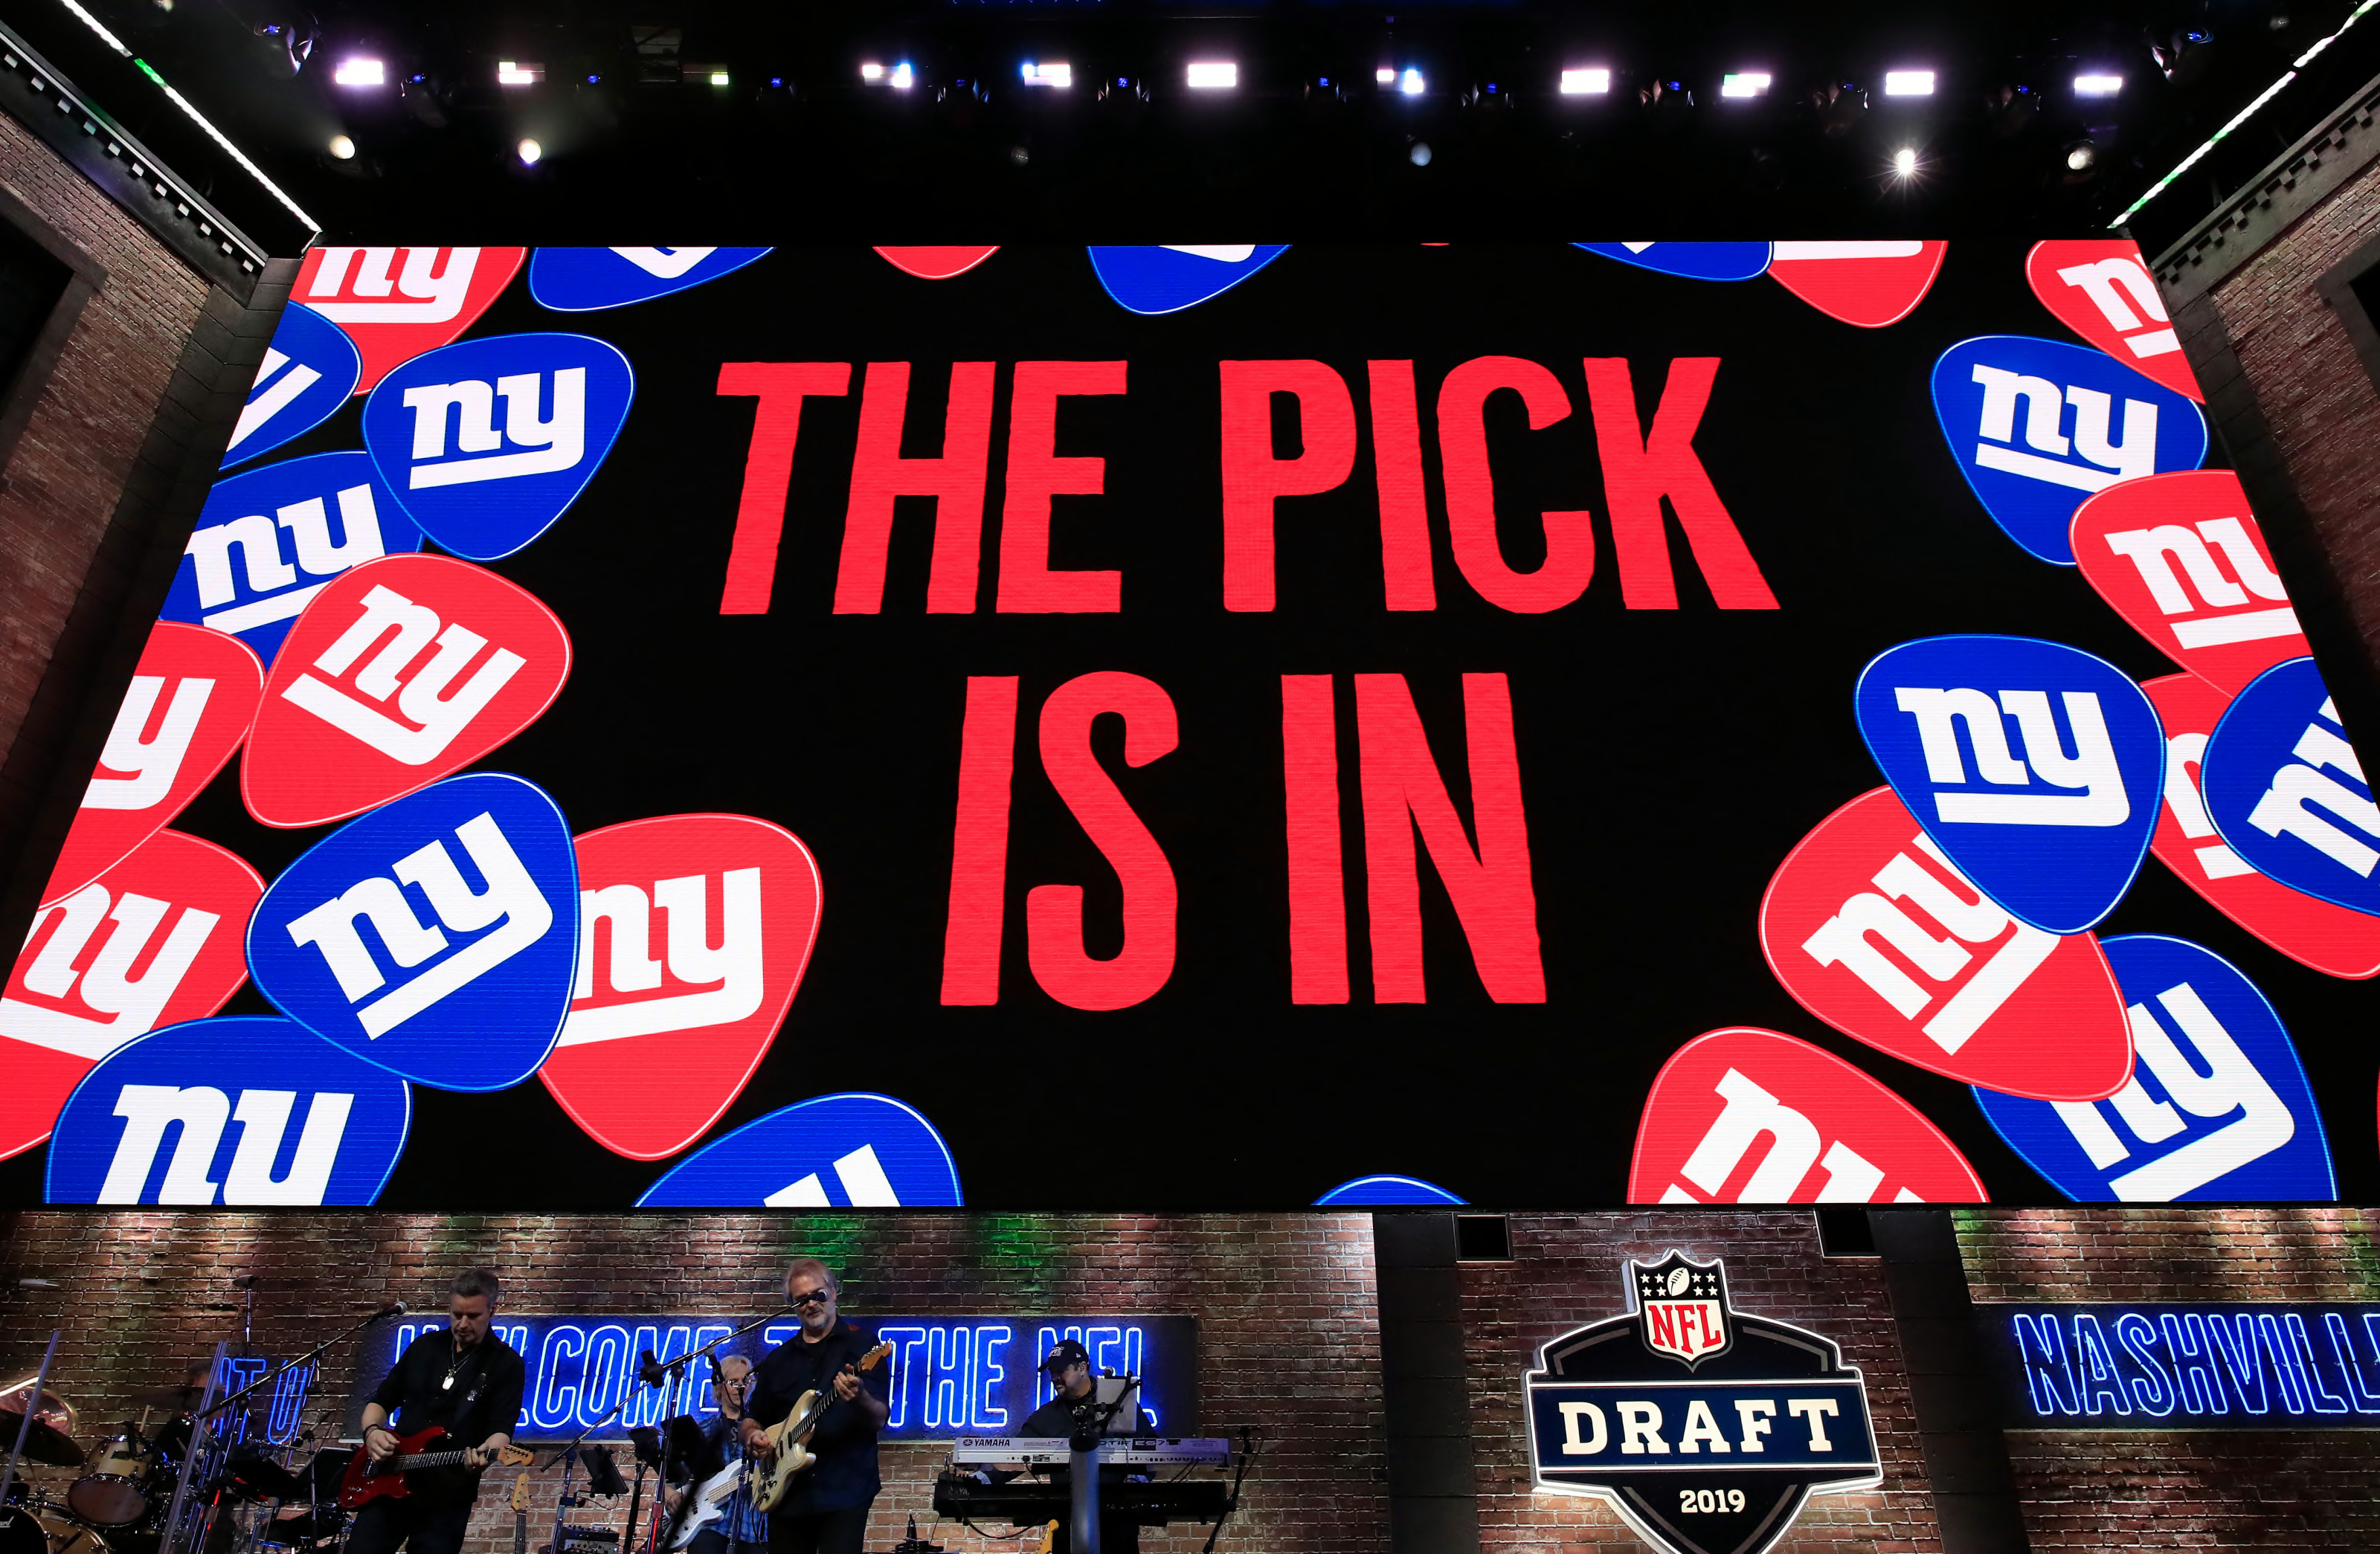 latest giants mock draft